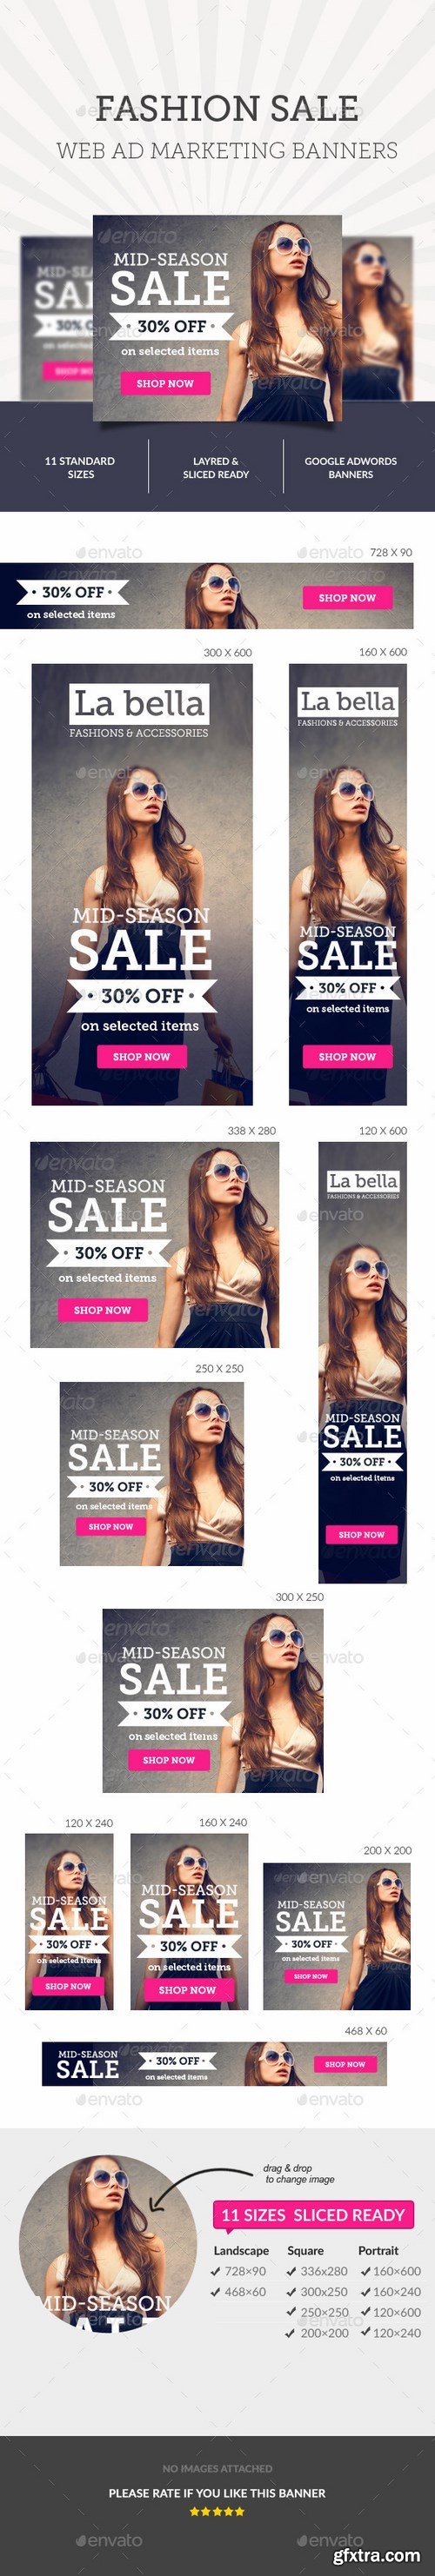 GraphicRiver - Fashion Sale Ad Banners 10274467